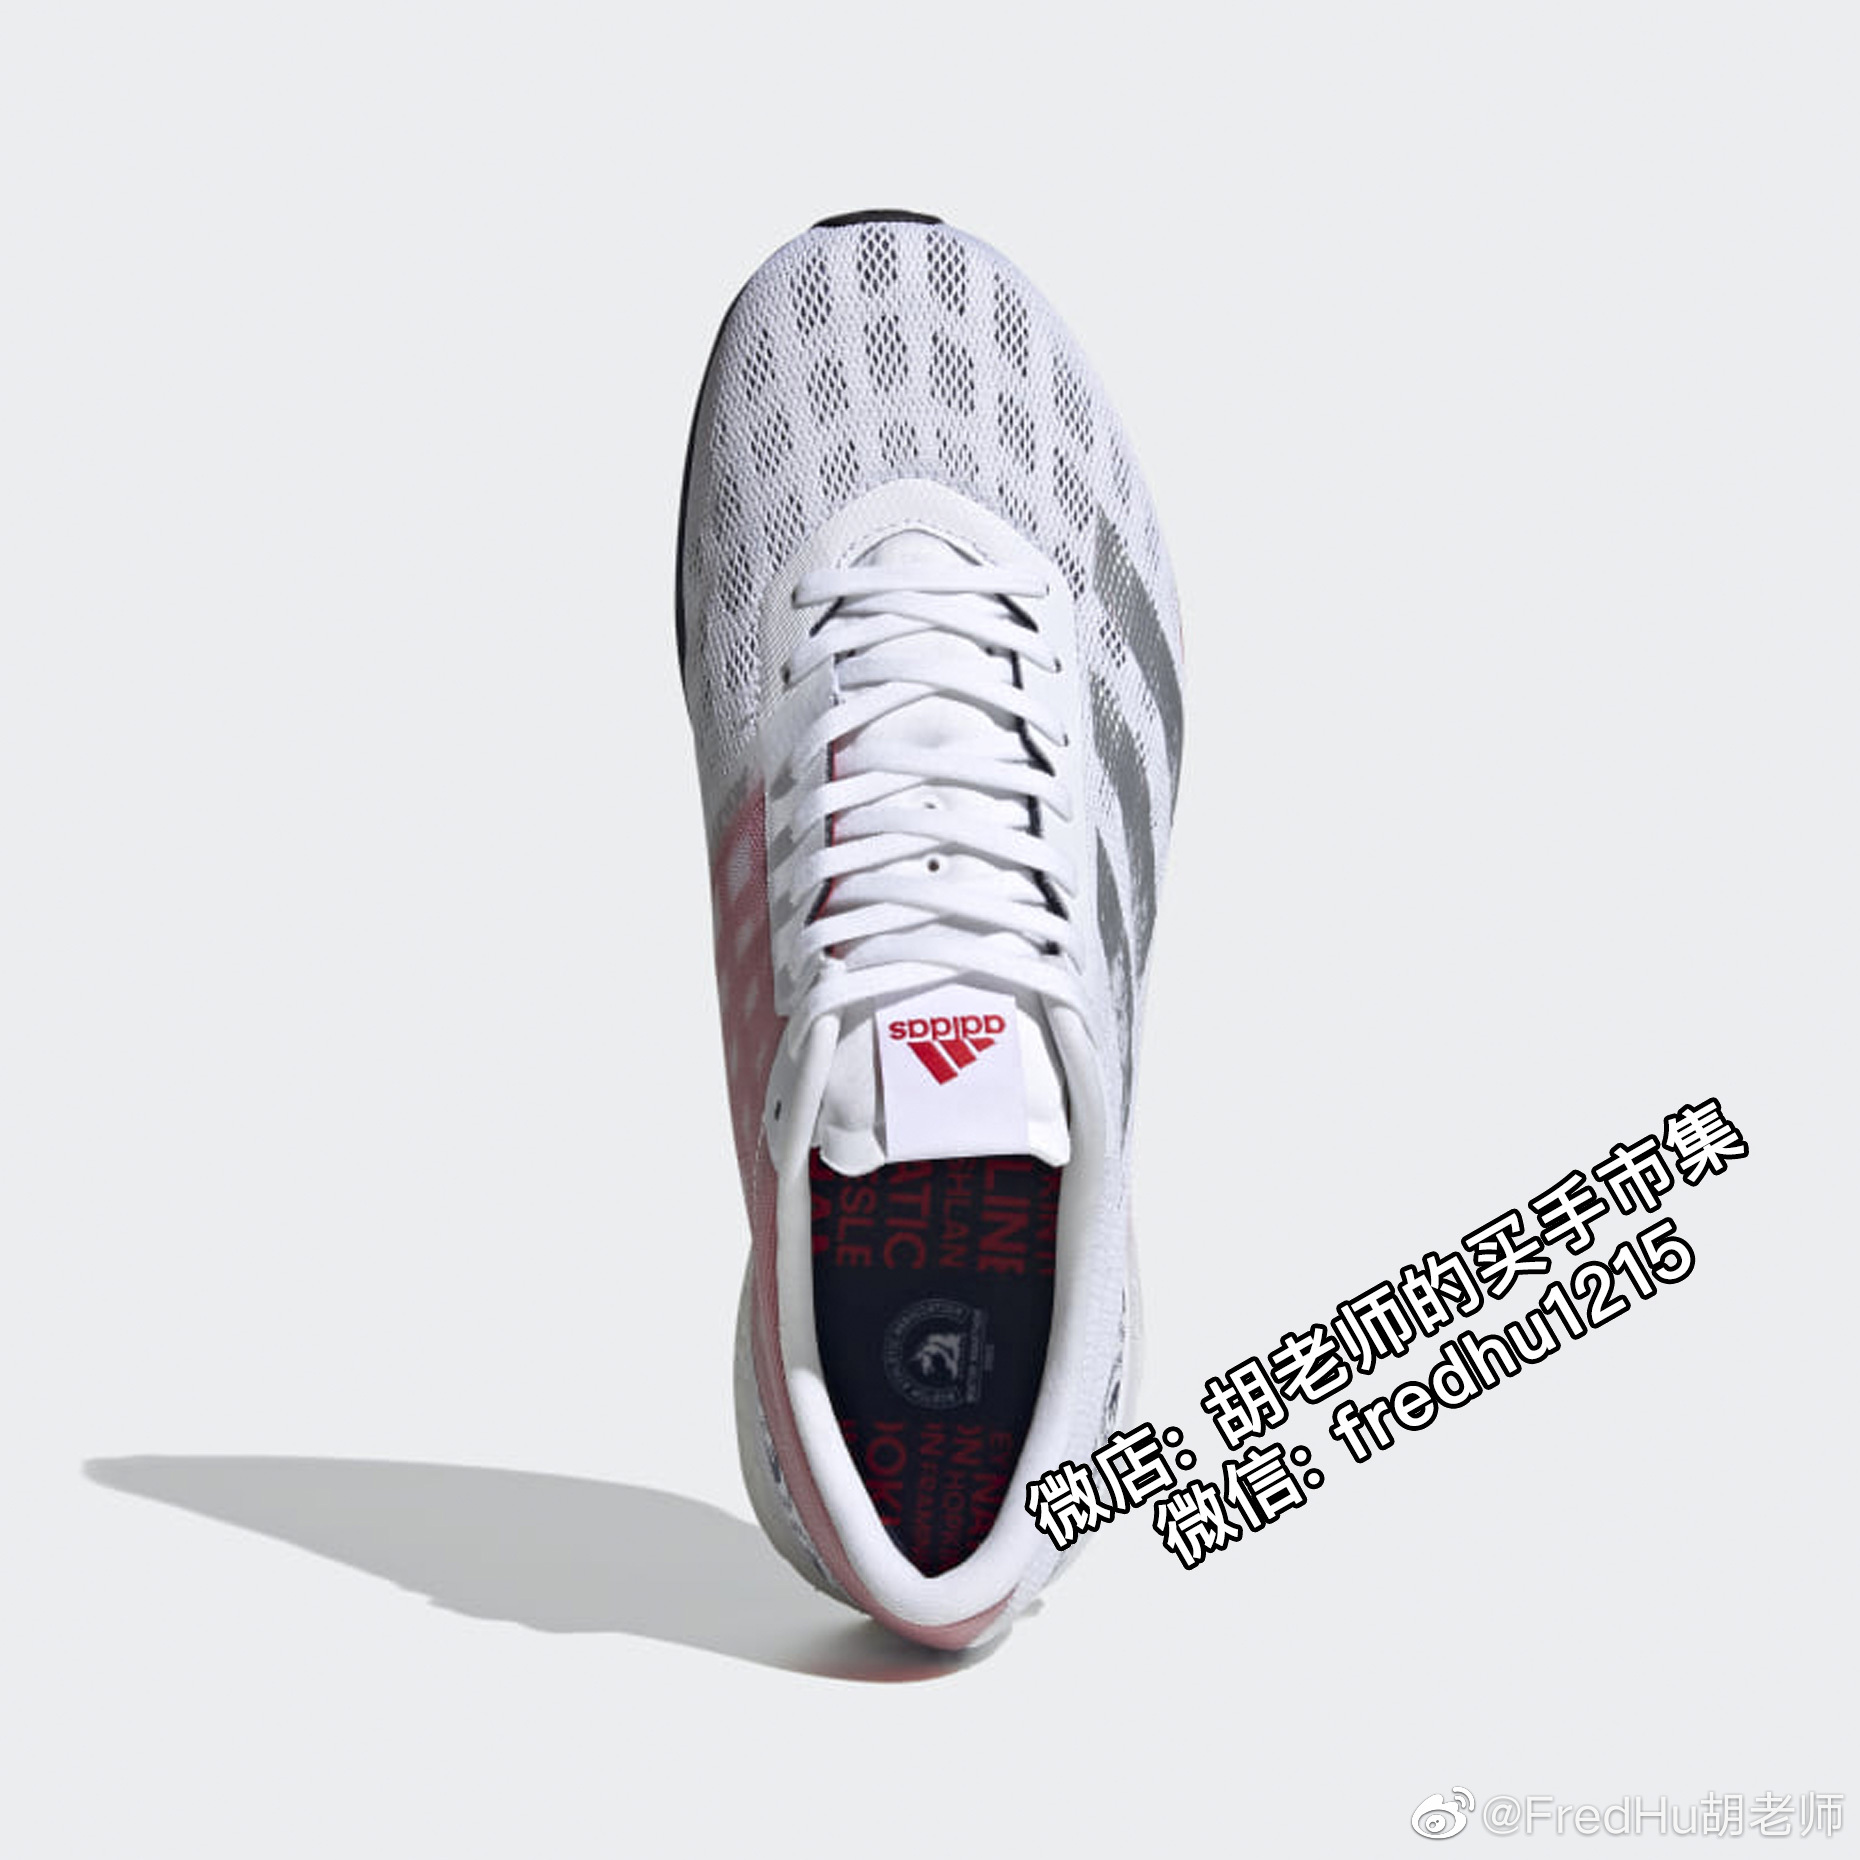 Adidas Adizero Boston 9波士顿马拉松限定配色升级鞋面 Lightstri